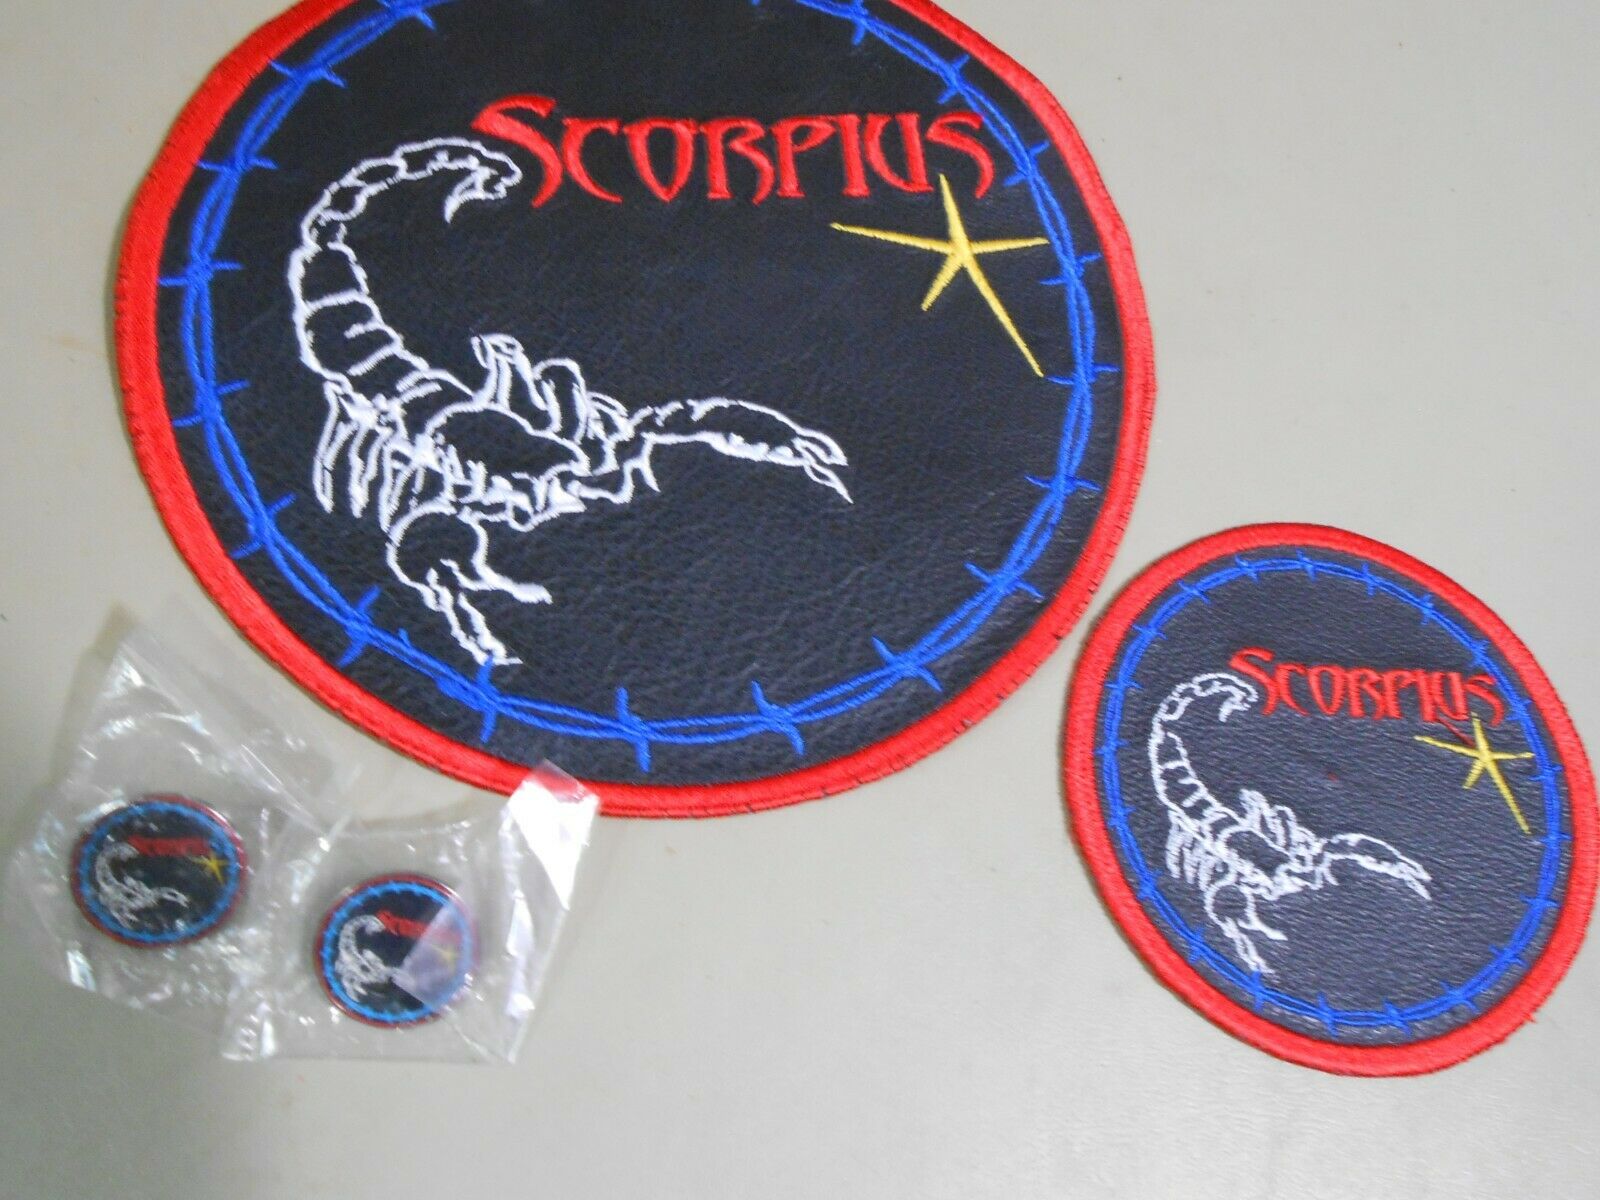 2 Scorpius Patches Plus 2 Lapel Pins Scorpion